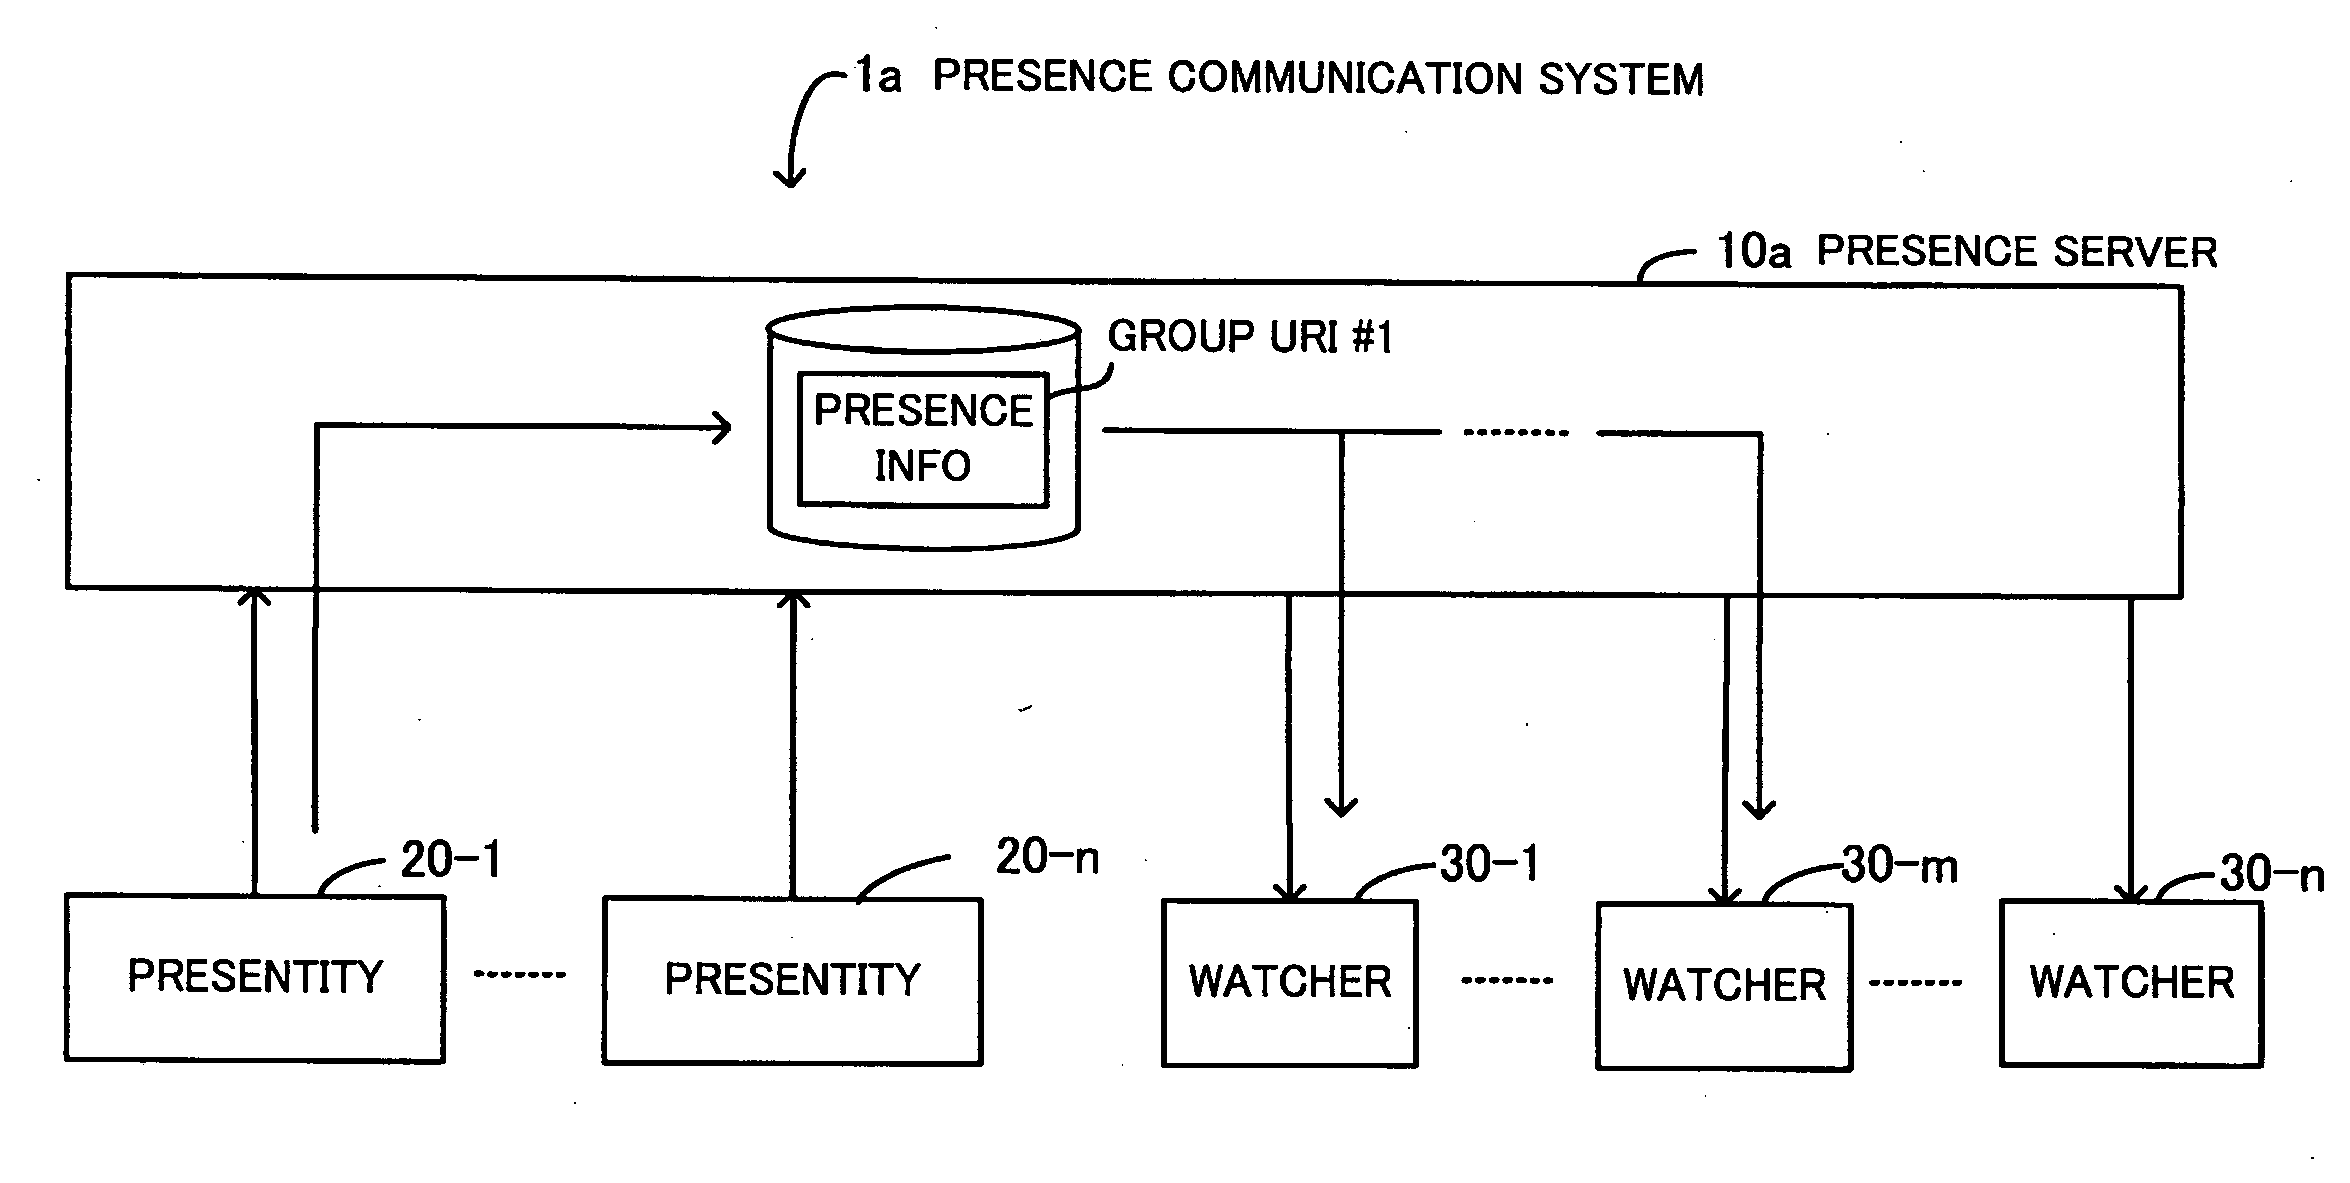 Presence communication system